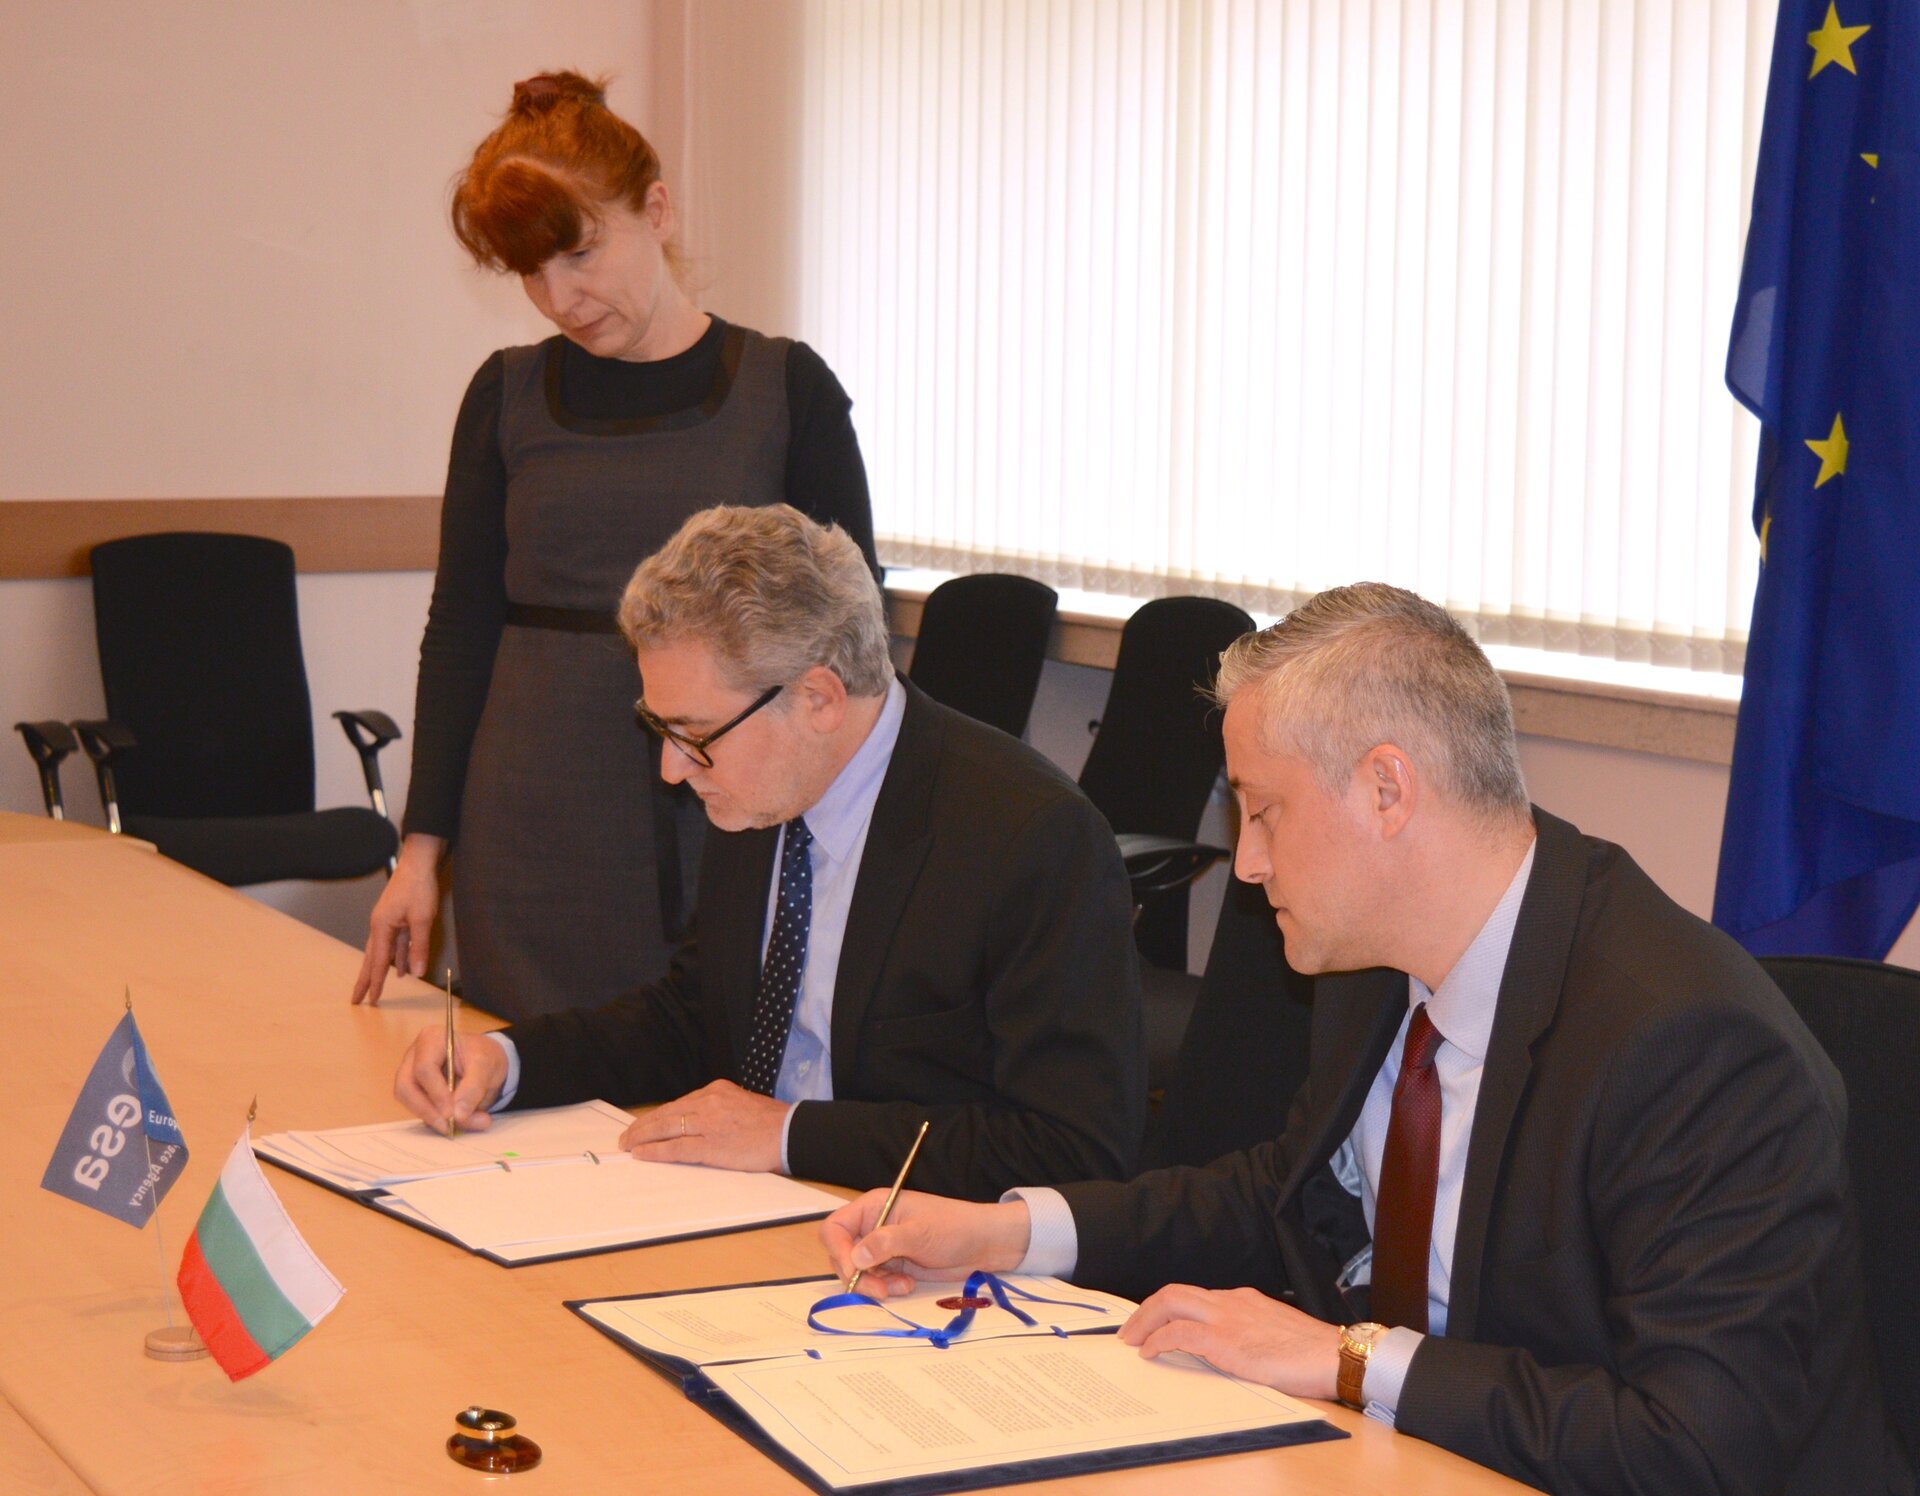 Podpis dohody v Bulharsku